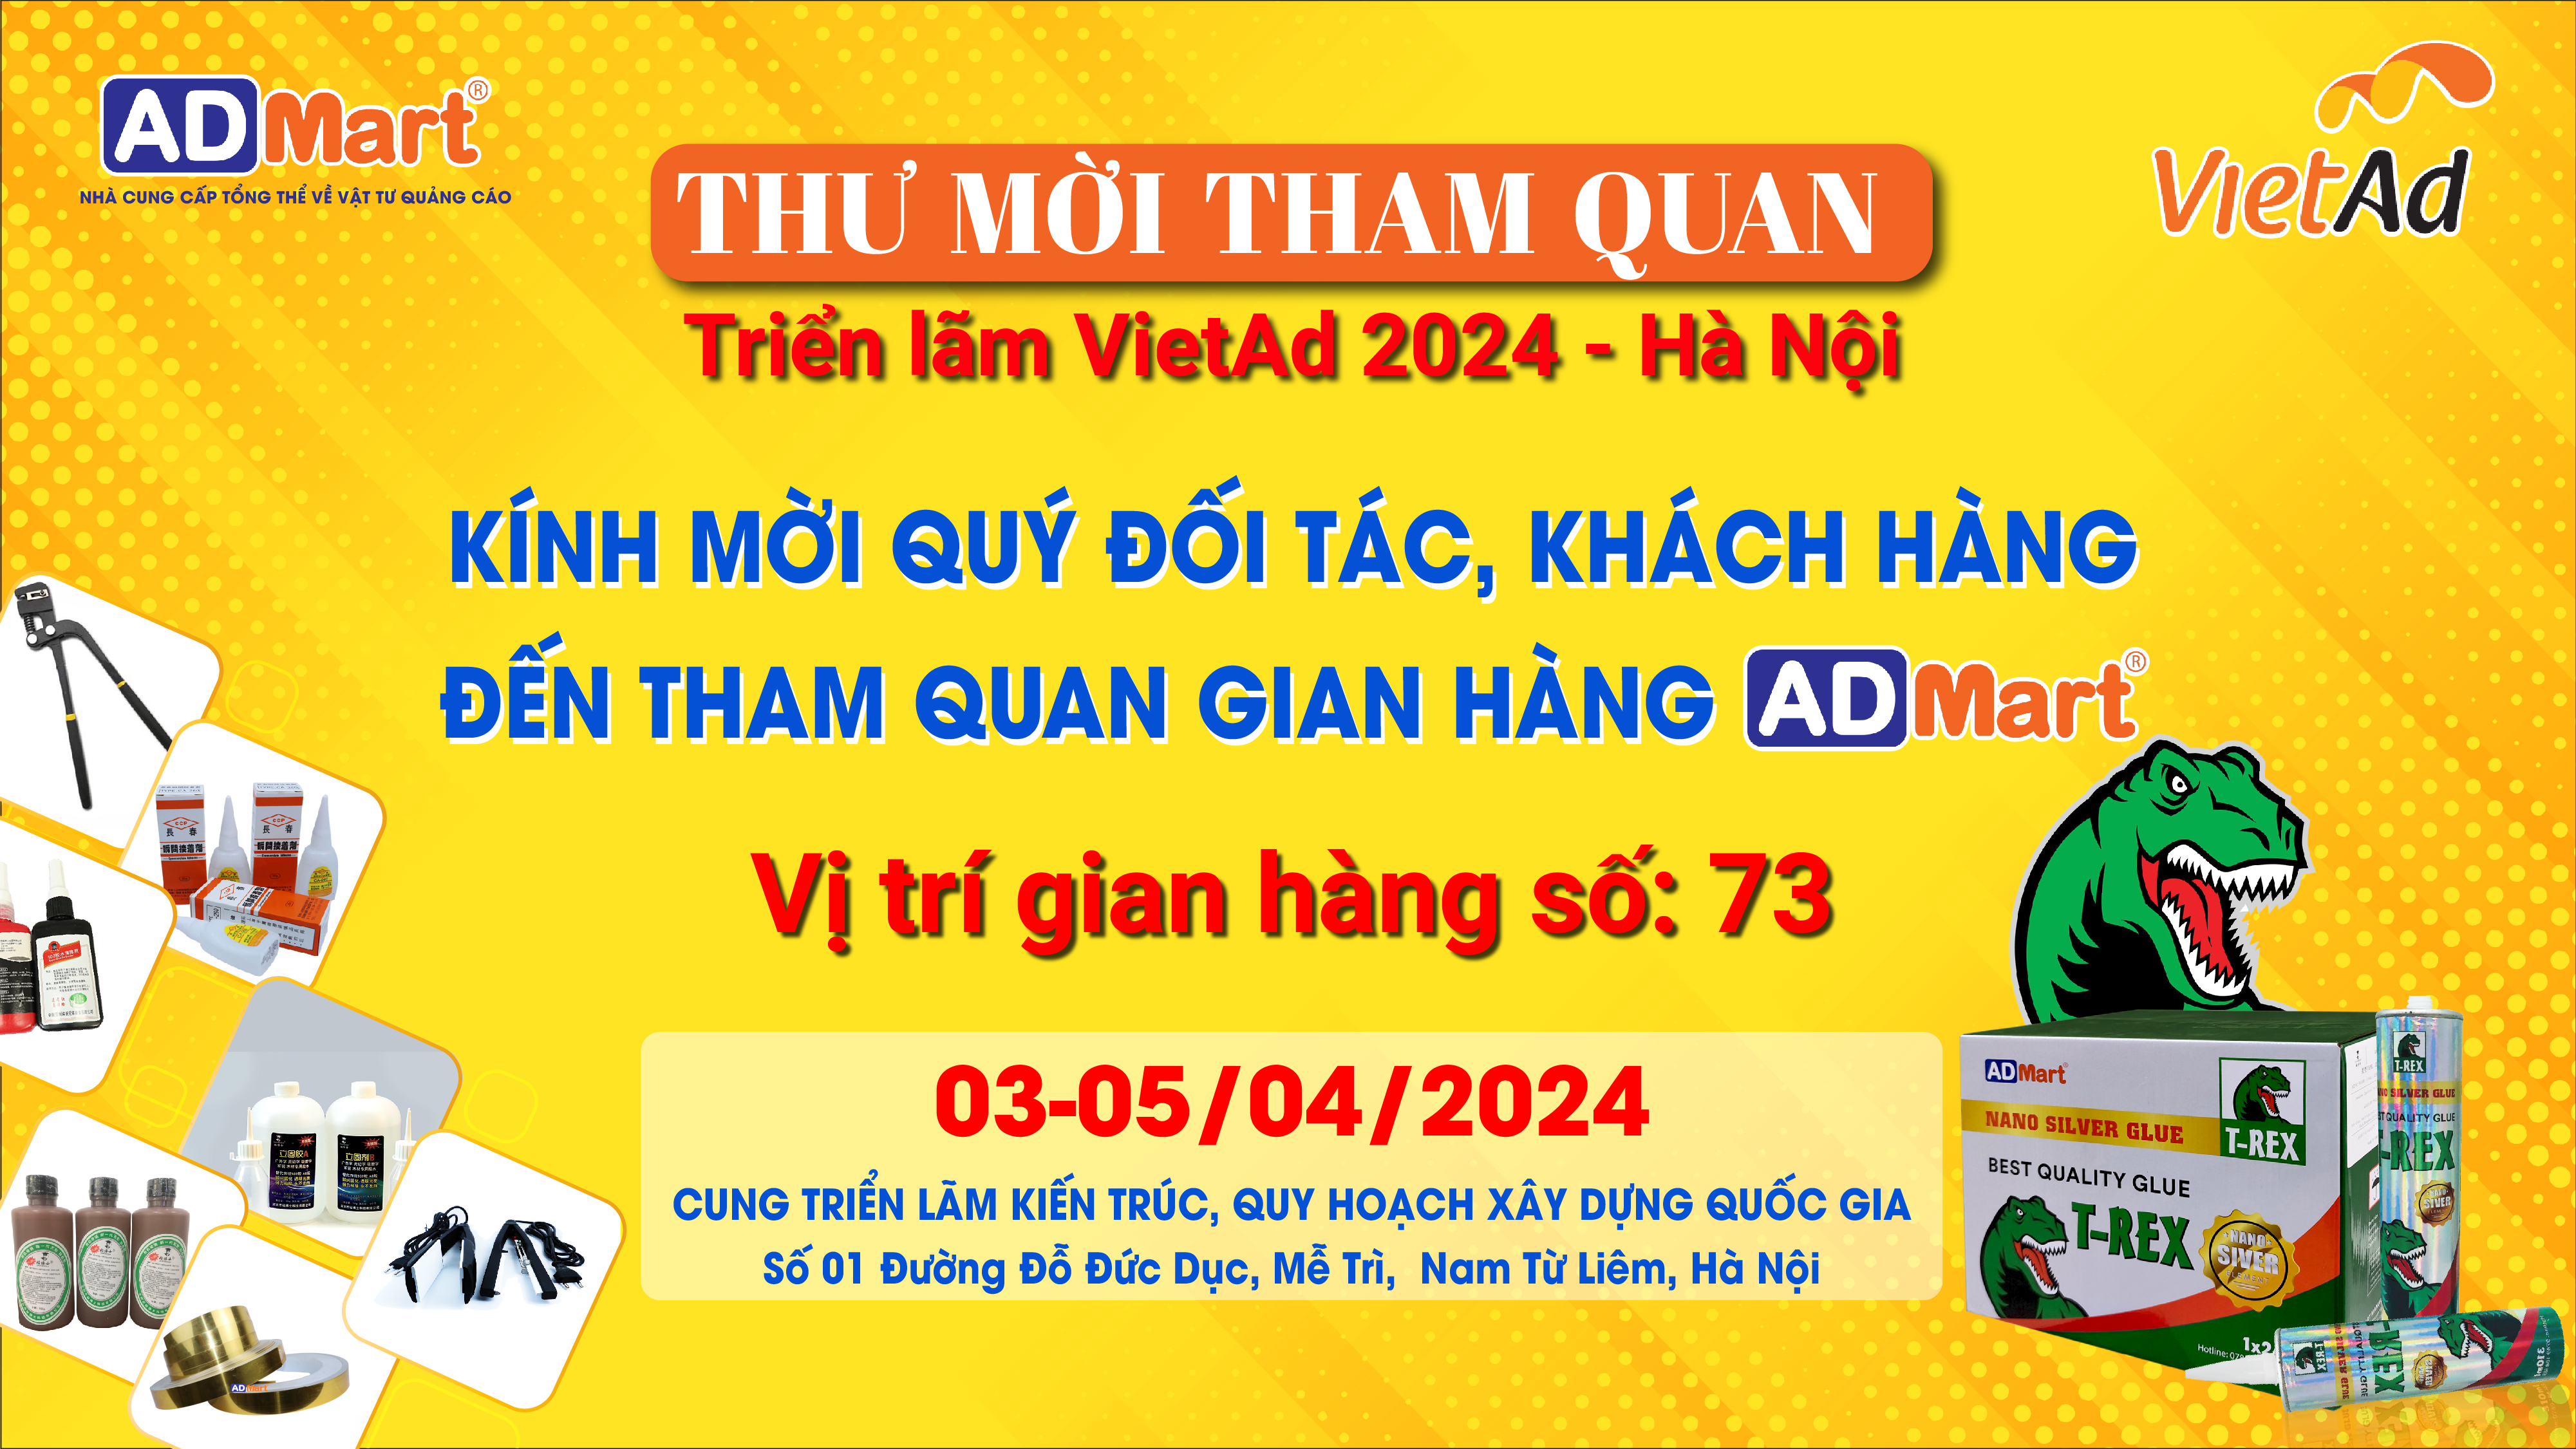 [THƯ MỜI] Tham quan gian hàng AD-Mart tại VietAd Hà Nội 2024